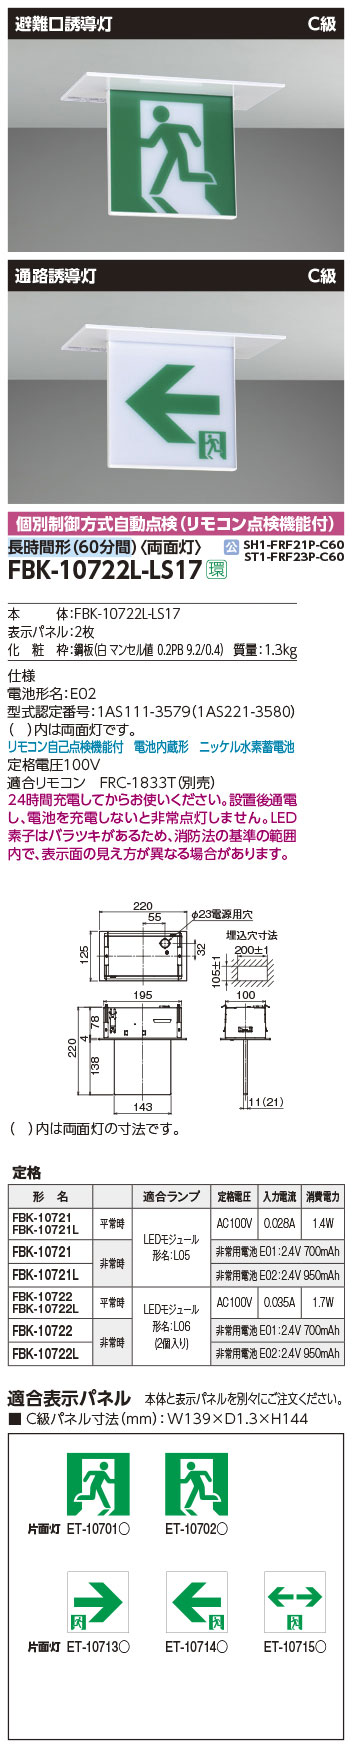 FBK-10722L-LS17 || LED誘導灯本体 東芝 【天井埋込形】避難口・通路